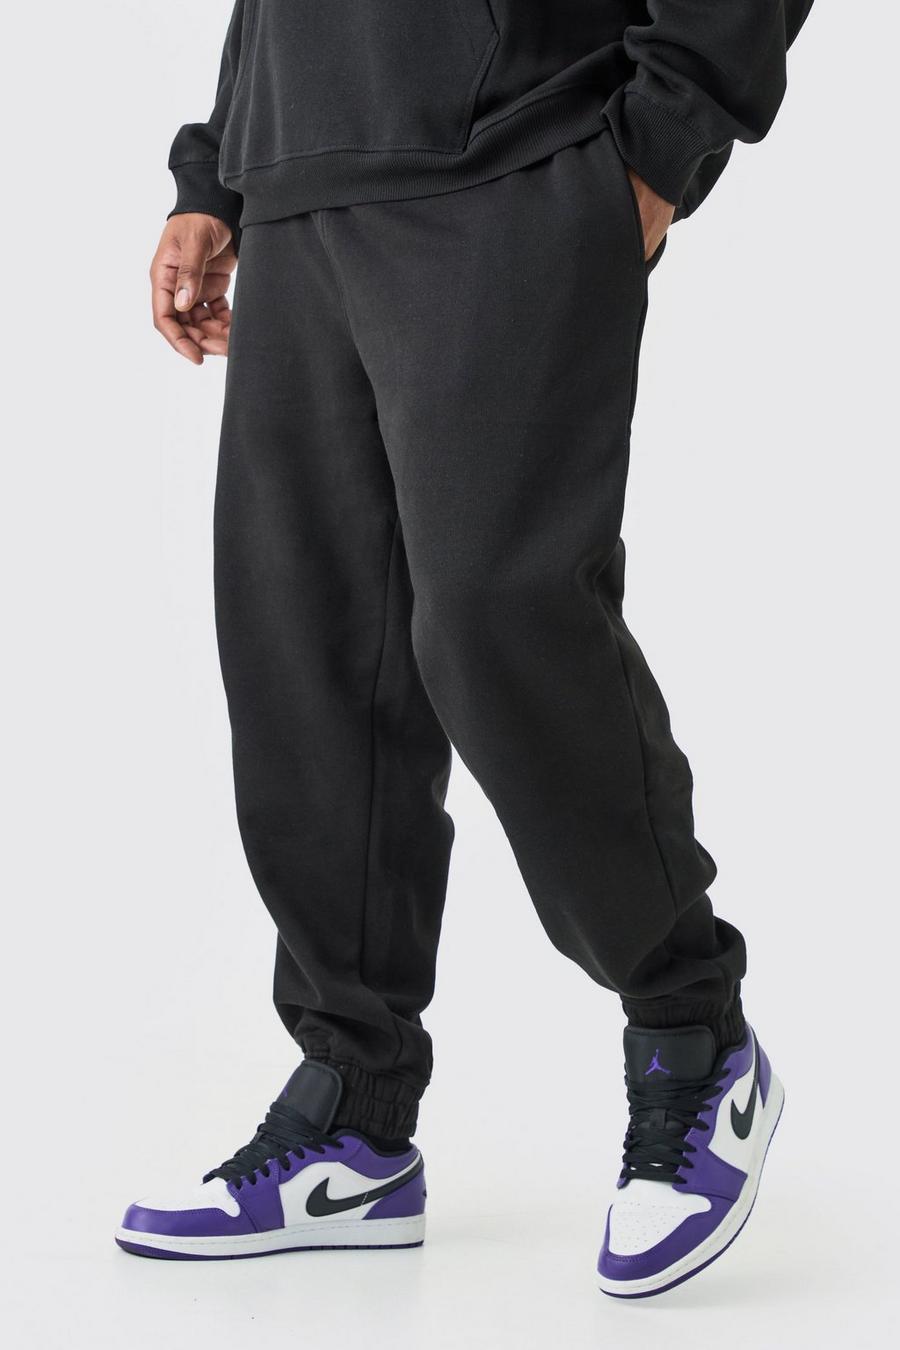 Pantaloni tuta Plus Size Core Fit, Black